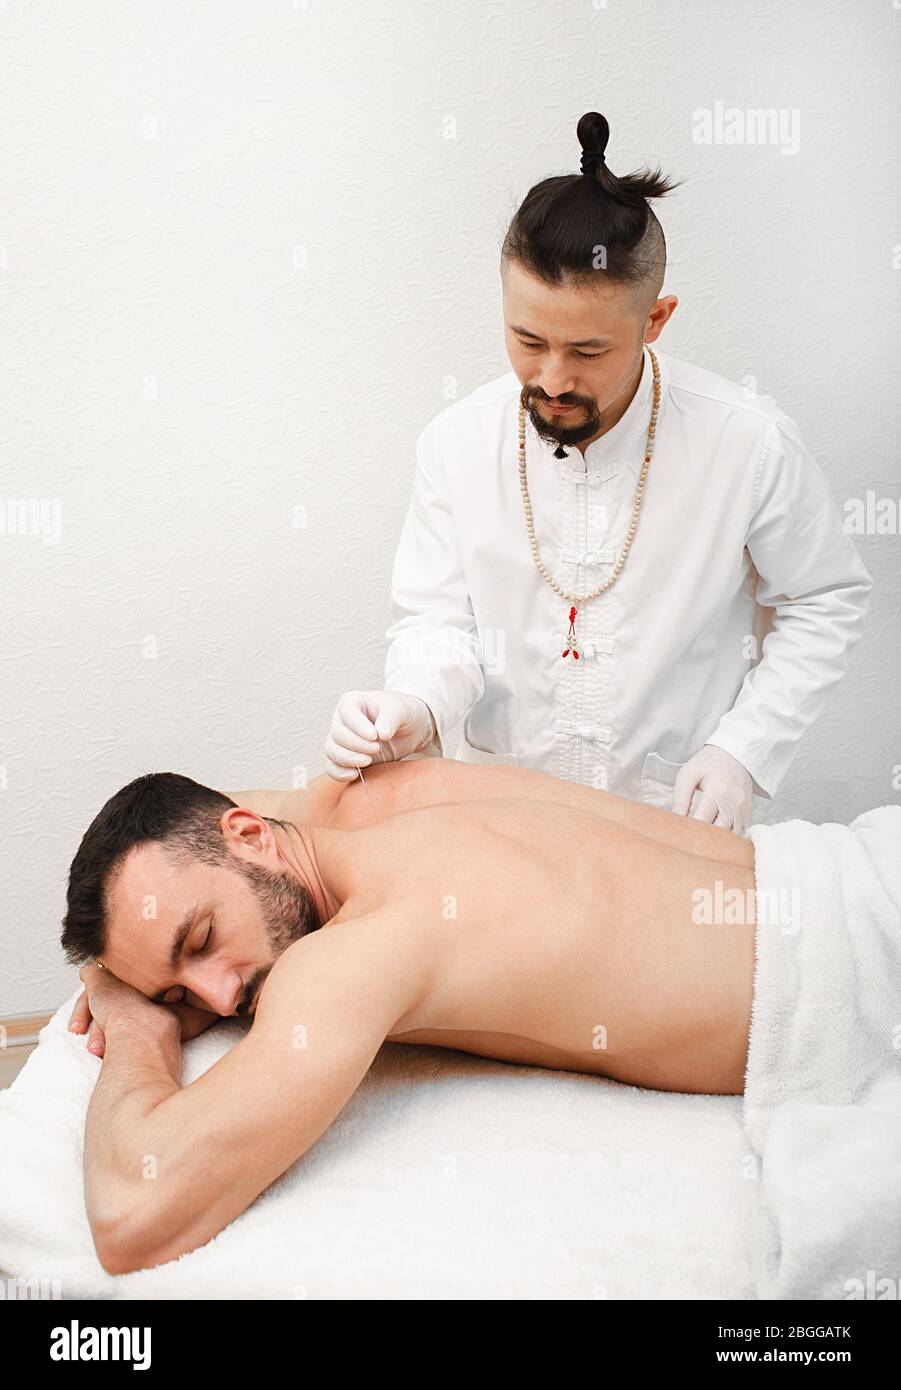 medico che fa un'agopuntura per un paziente per curare il mal di schiena cronico. Ago da vicino per l'agopuntura nella schiena dell'uomo Foto Stock